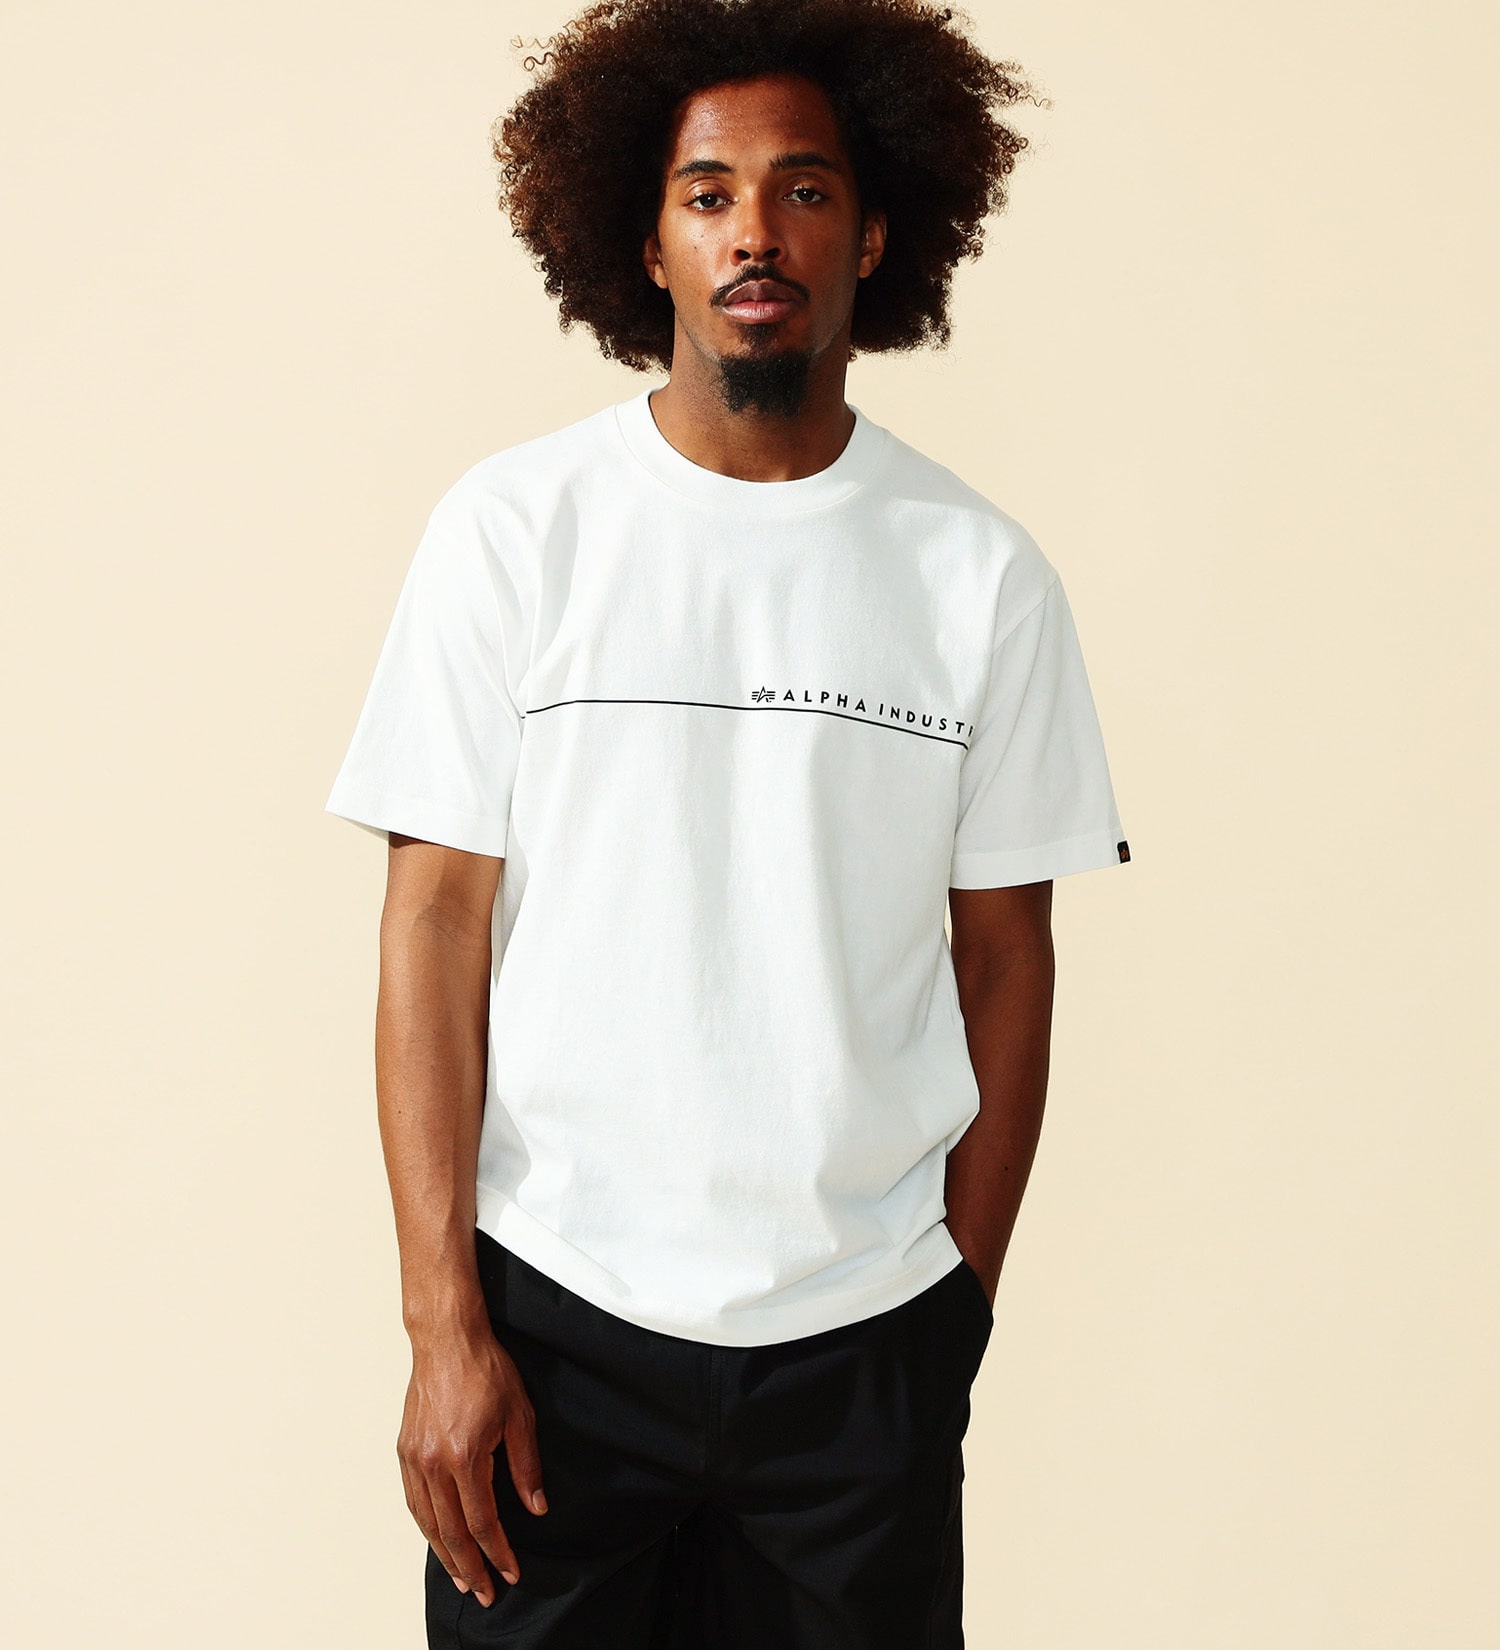 ALPHA(アルファ)のHORIZONTAL ラインプリントTシャツ 半袖|トップス/Tシャツ/カットソー/メンズ|ホワイト